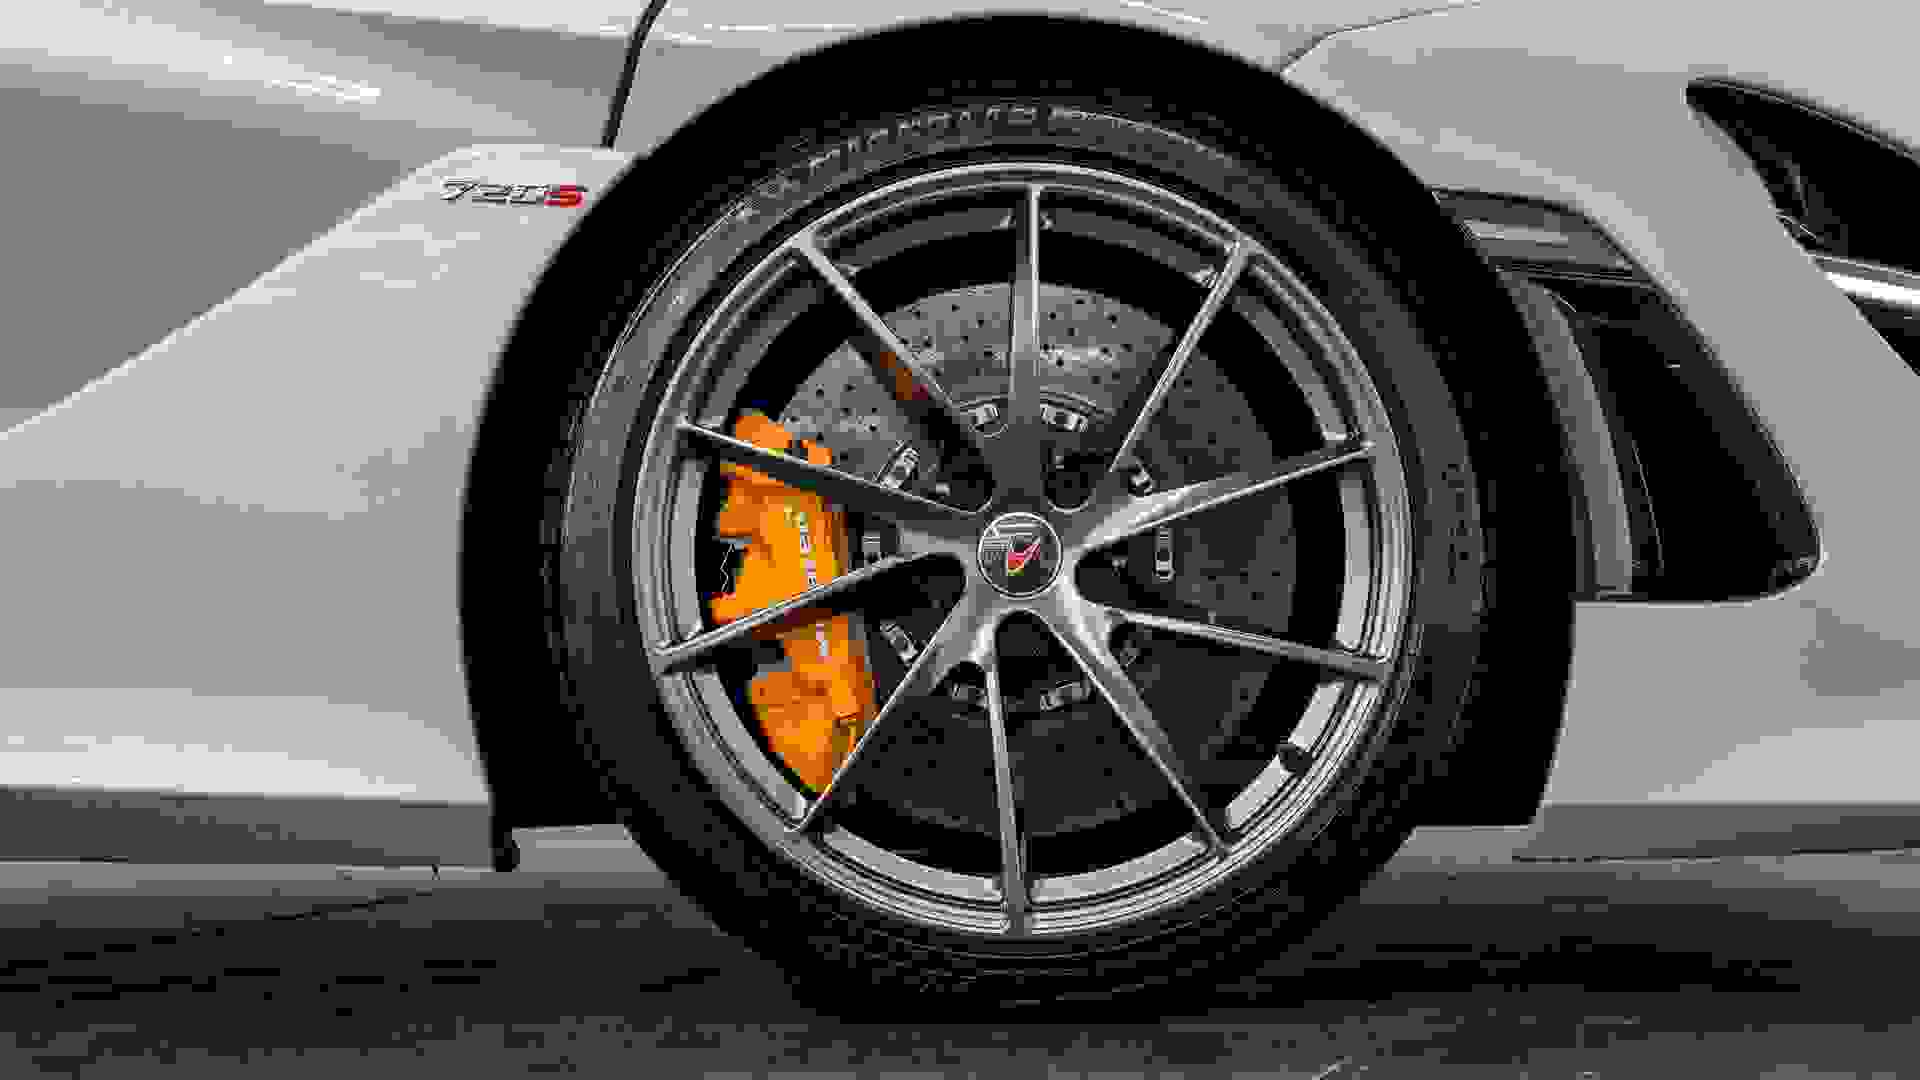 McLaren 720S Photo 2ffab948-9e29-437c-adf0-0c156c078d6f.jpg